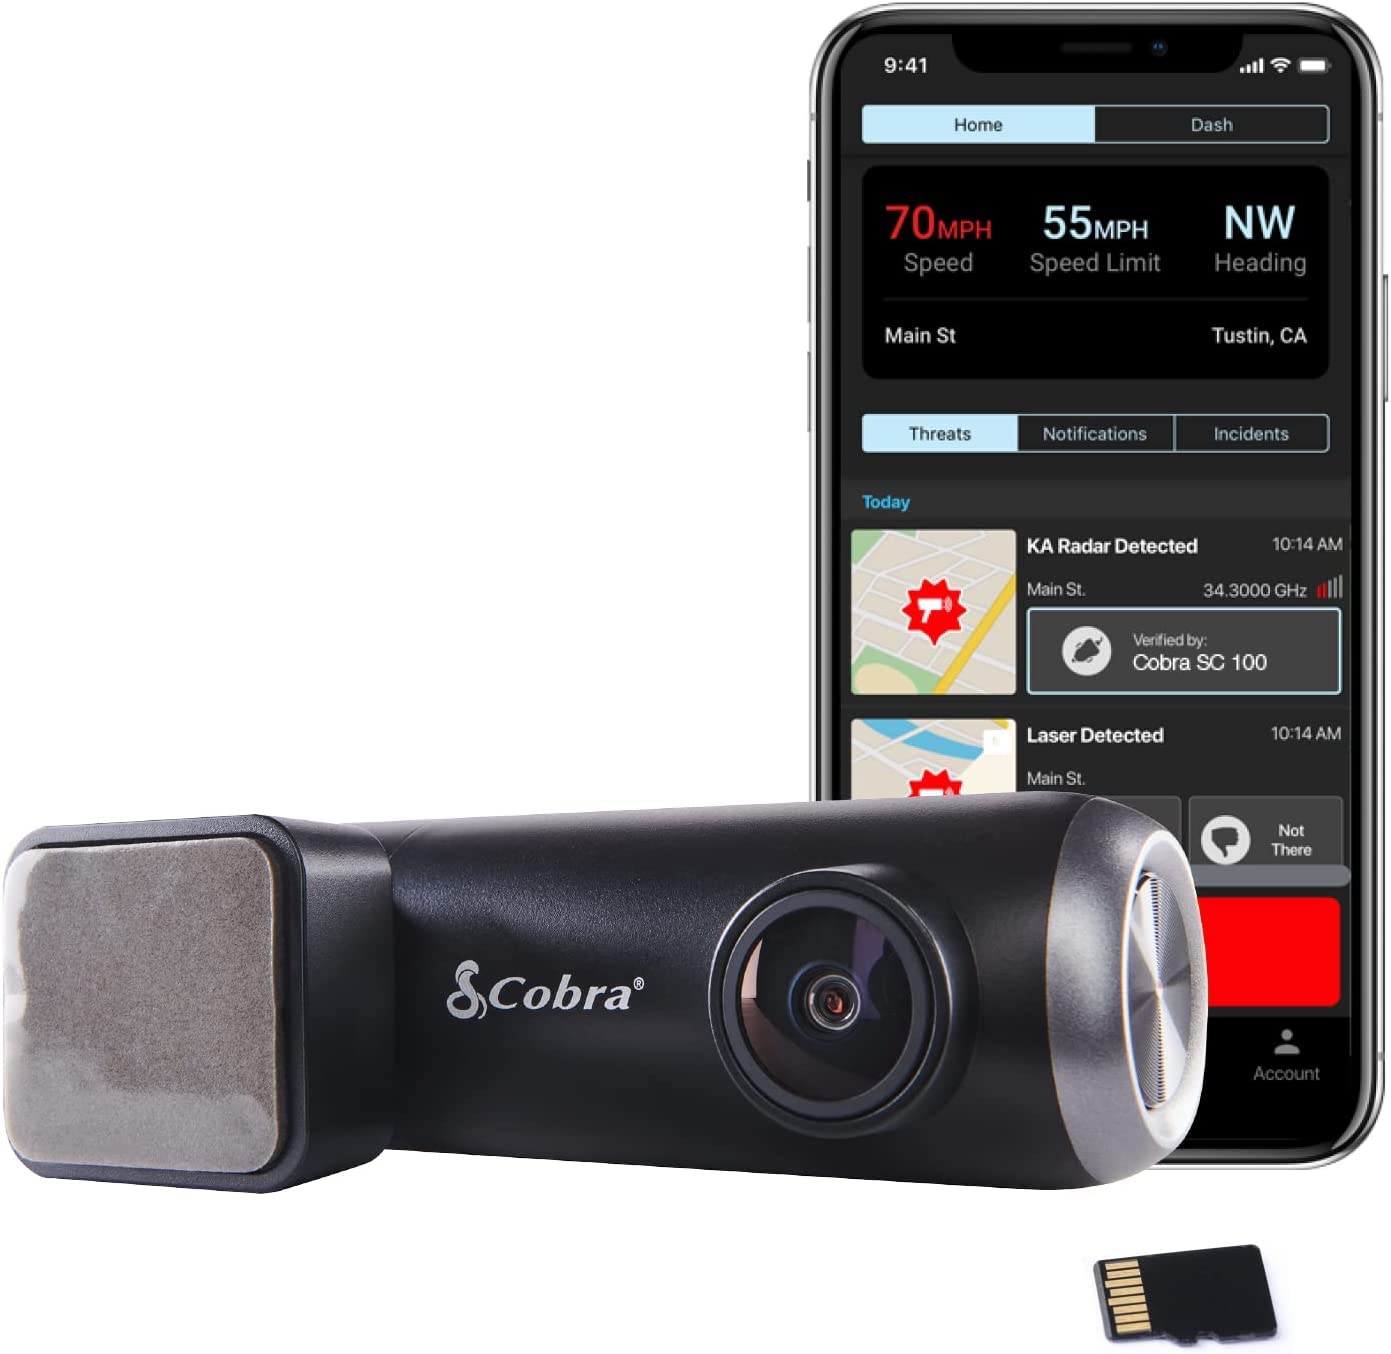 Cobra Smart Dashcam Autokamera (SC 100) - Full HD 1080P Auflösung, integriertes WiFi & GPS, 140 Grad Blickwinkel, 8GB SD Karte, Geteilte Alarme, Unfallberichte, Notfall MayDay, Drive Smarter App von COBRA